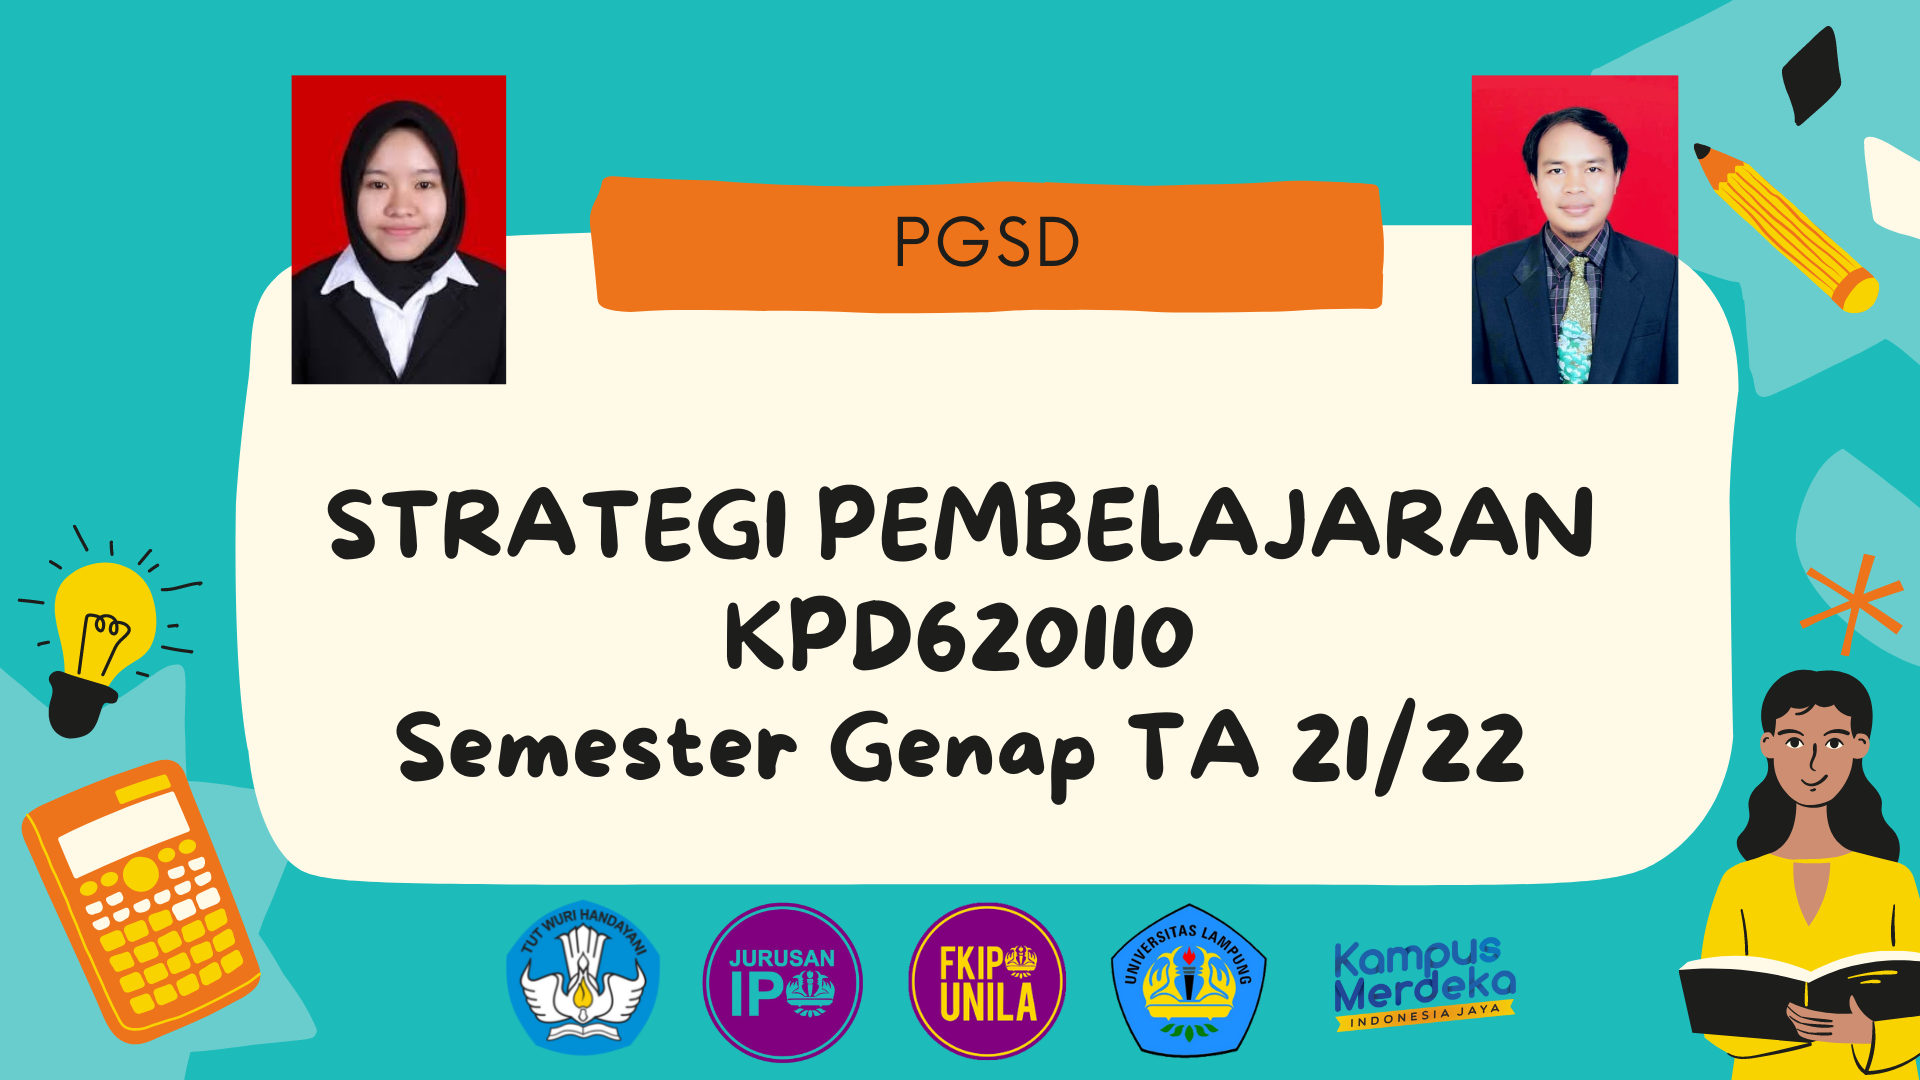 PGSD_Strategi Pembelajaran_Kelas J_Genap_2021/2022